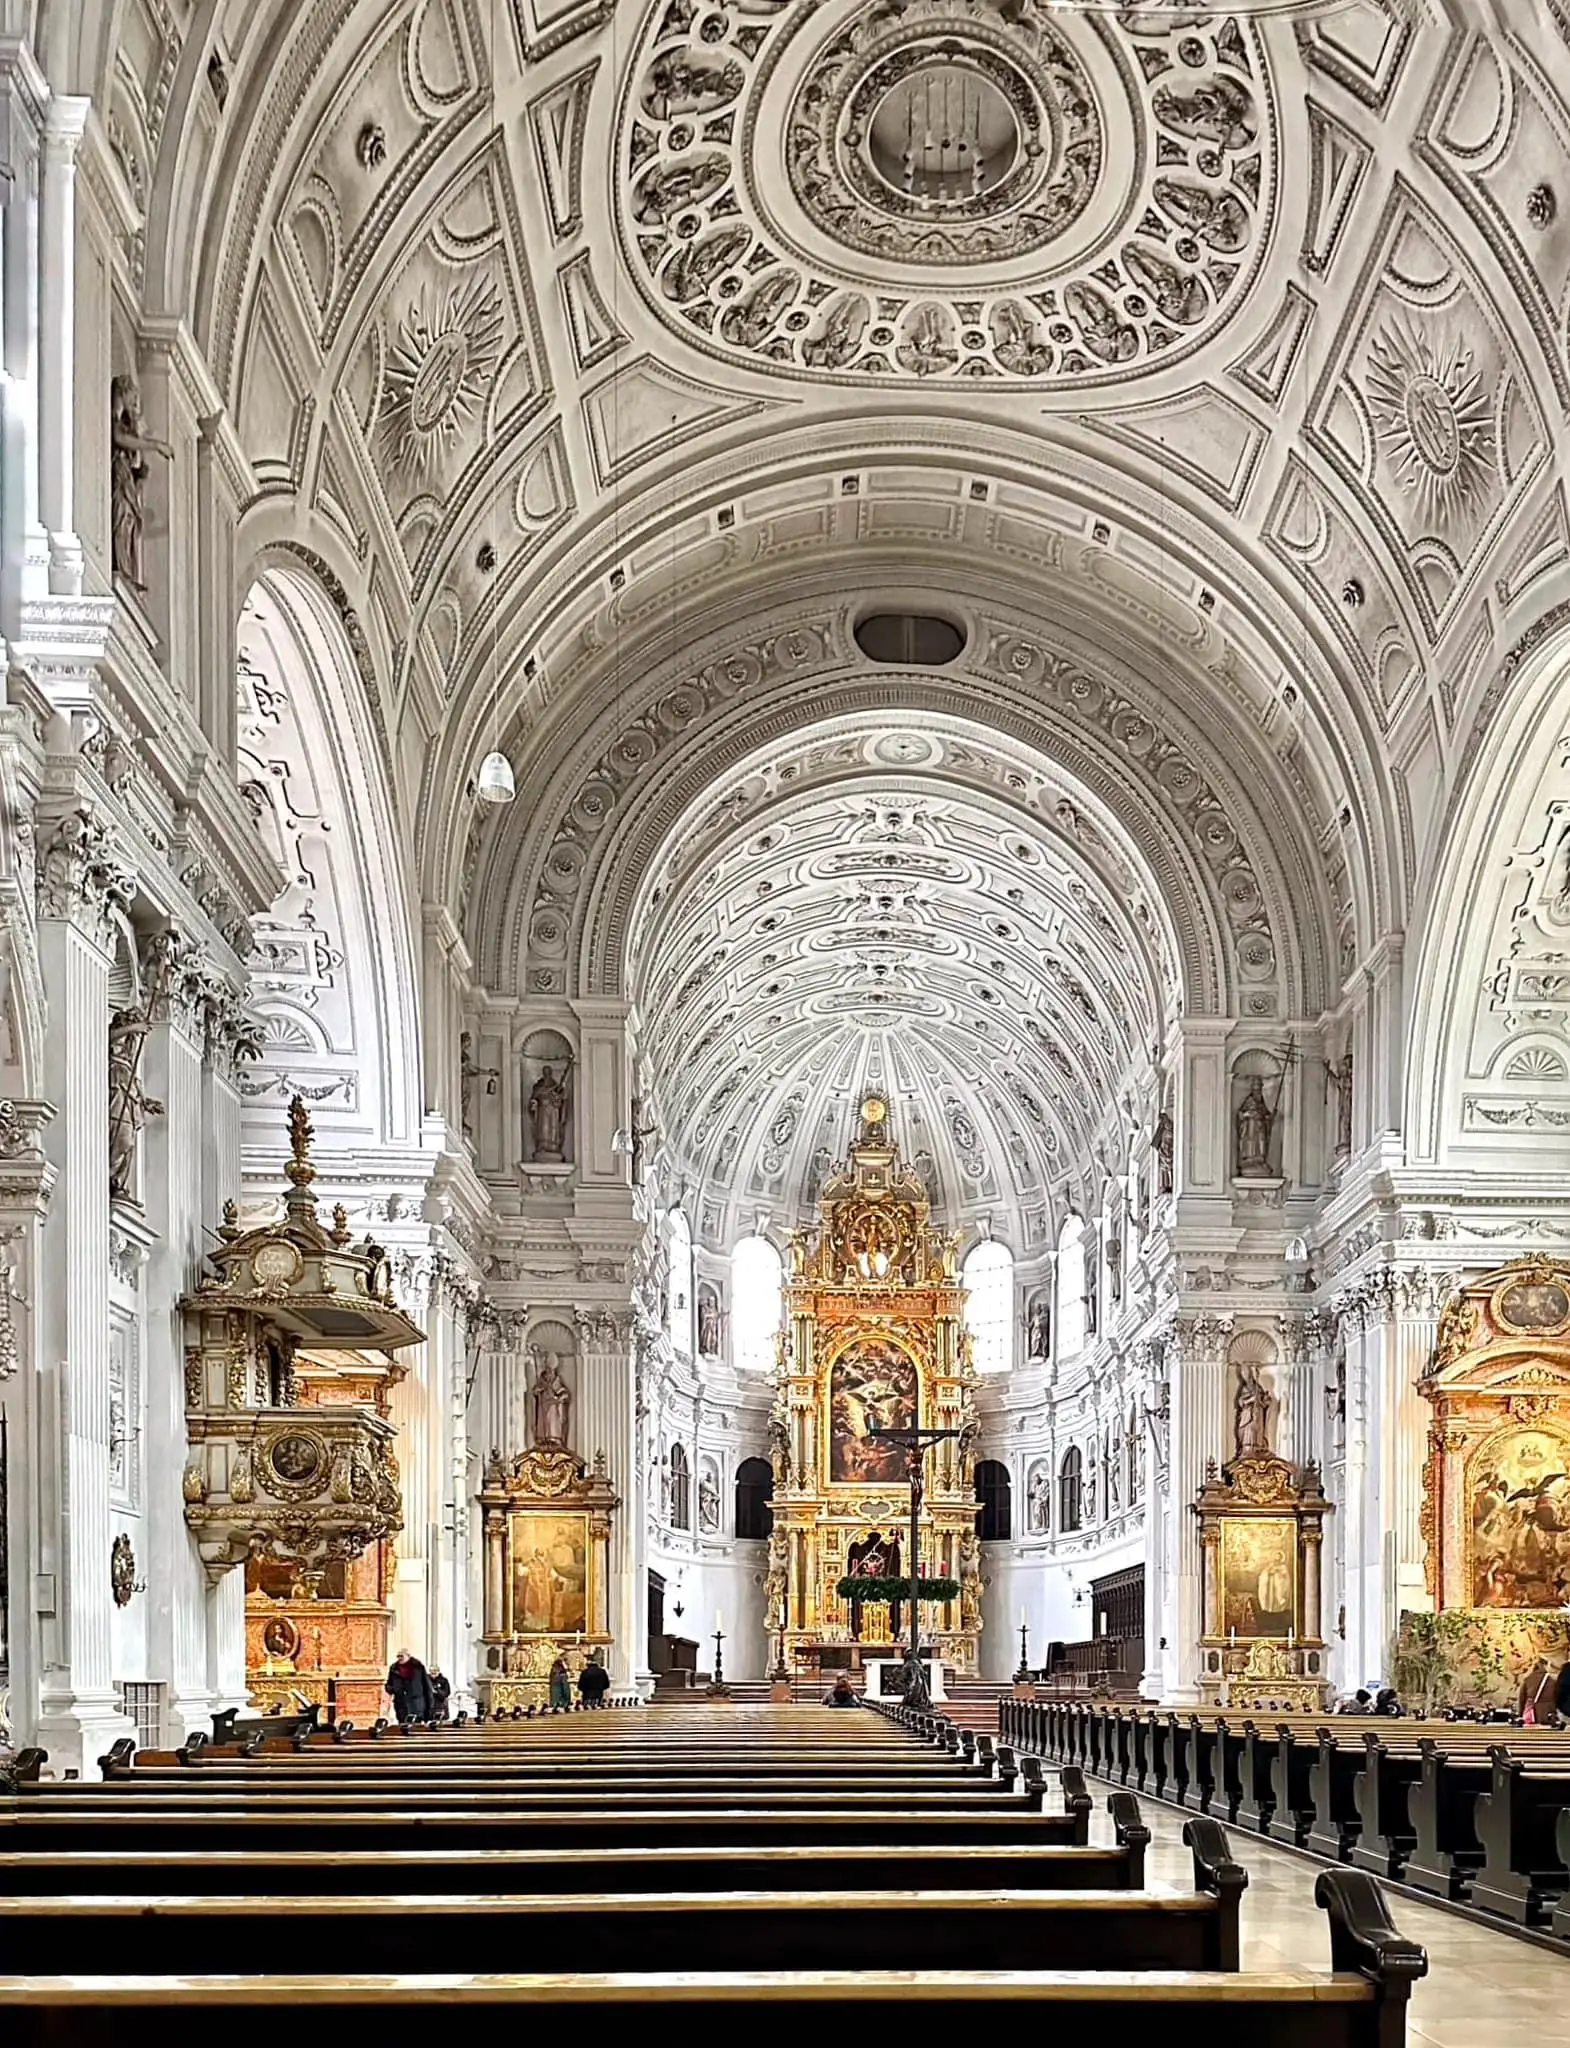 St. Michael's Church, Munich, Austria